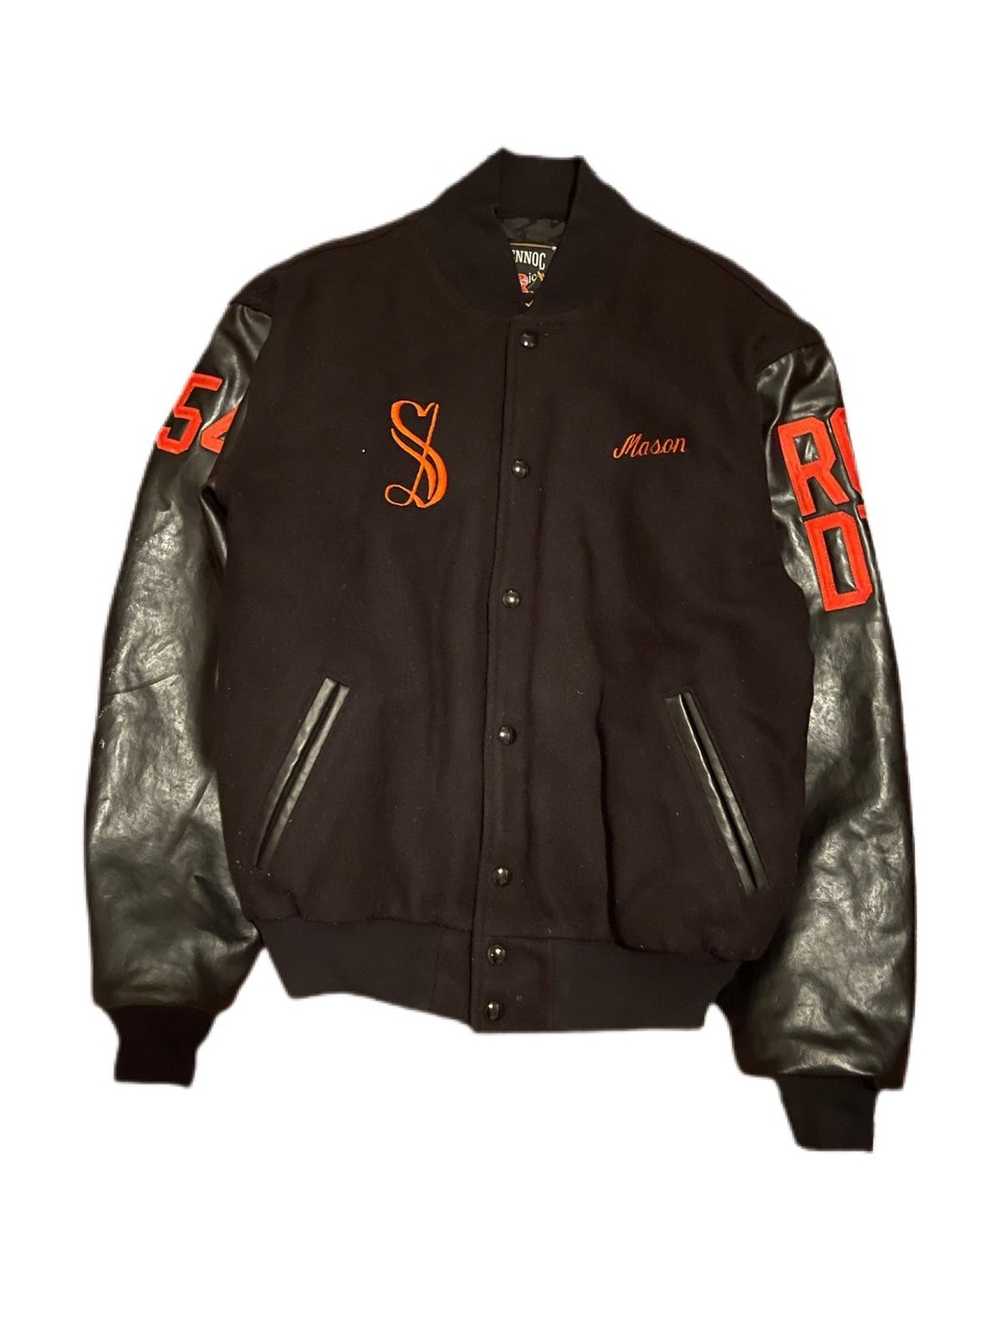 Vintage 2002 Somerville Pop-Warner varsity jacket - image 1